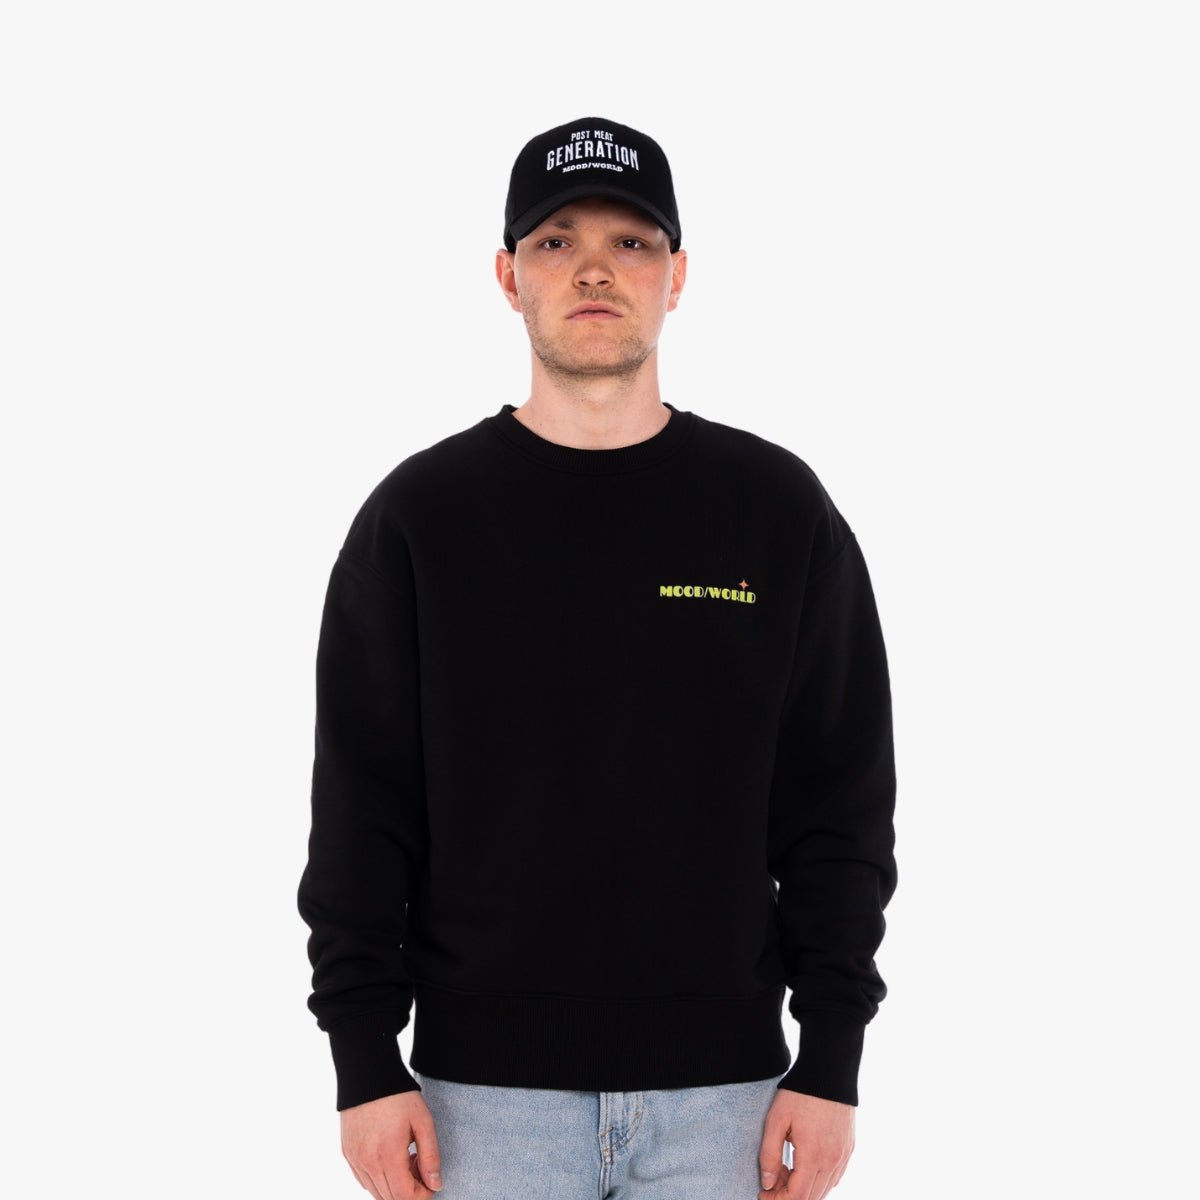 'WHISH YOU' Organic Oversize Sweatshirt in der Farbe Black als Front Nahaufnahme getragen von einem männlichen Model